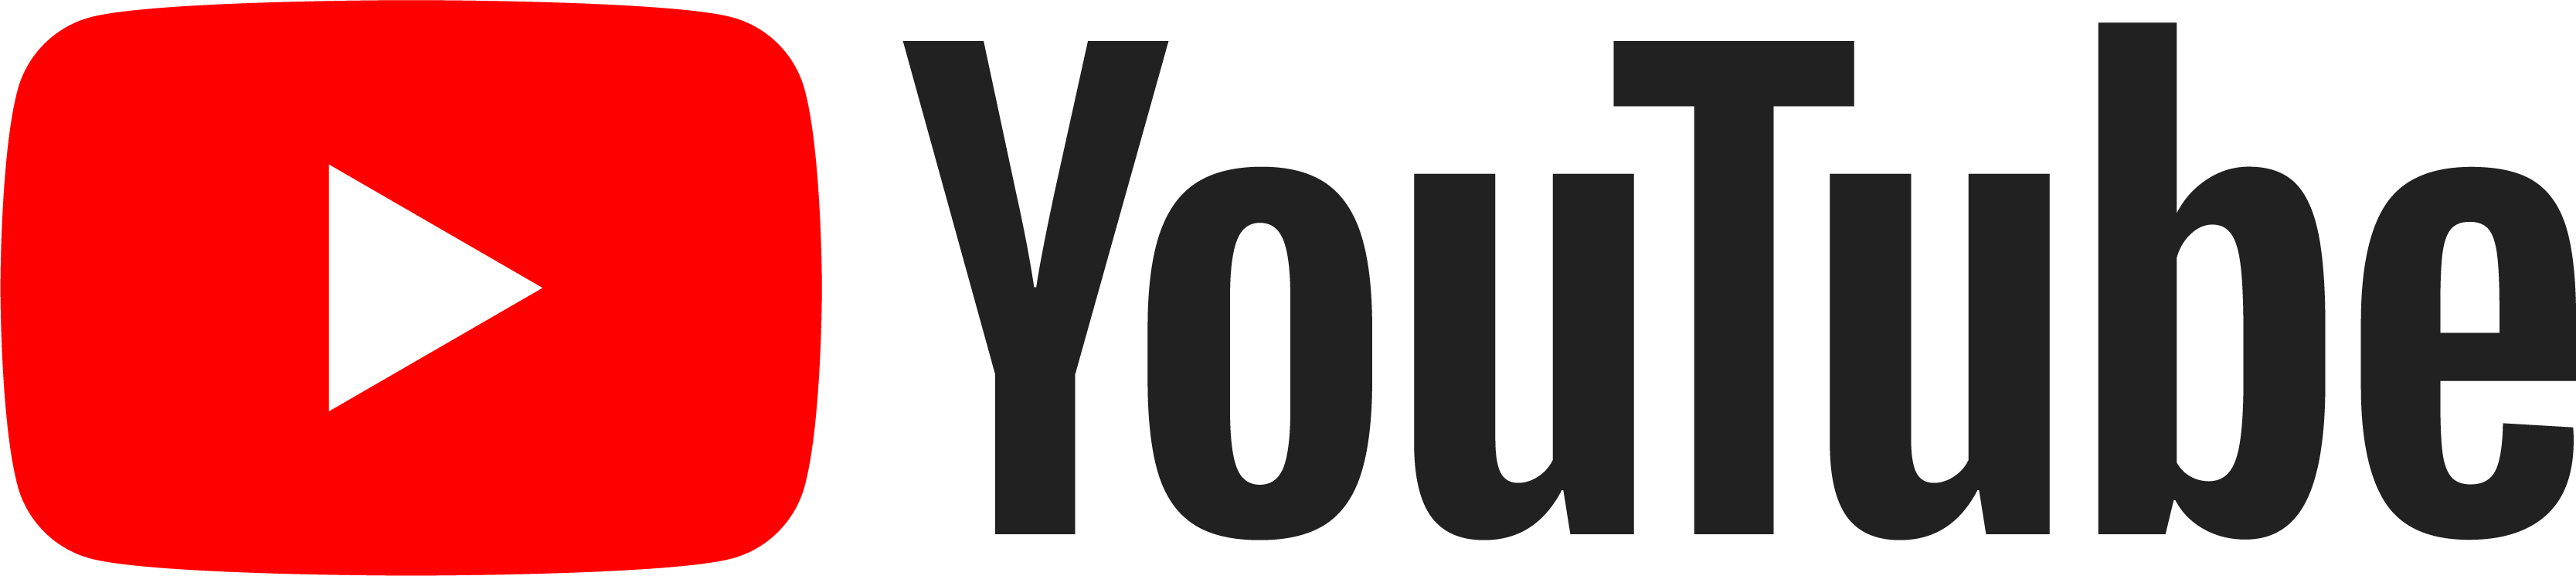 YouTube-Logo-Vector